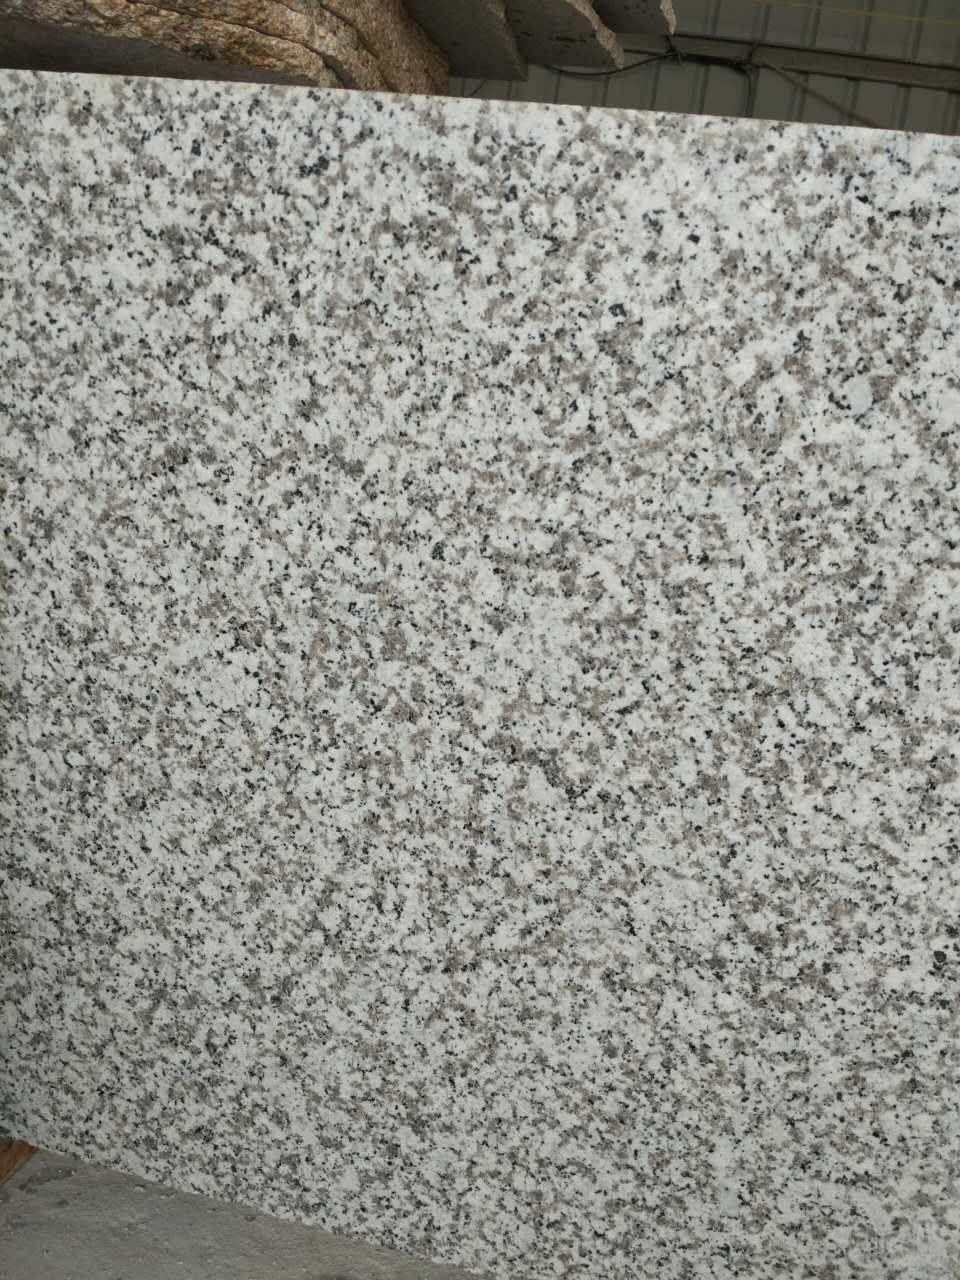 G439 granite stone pavement